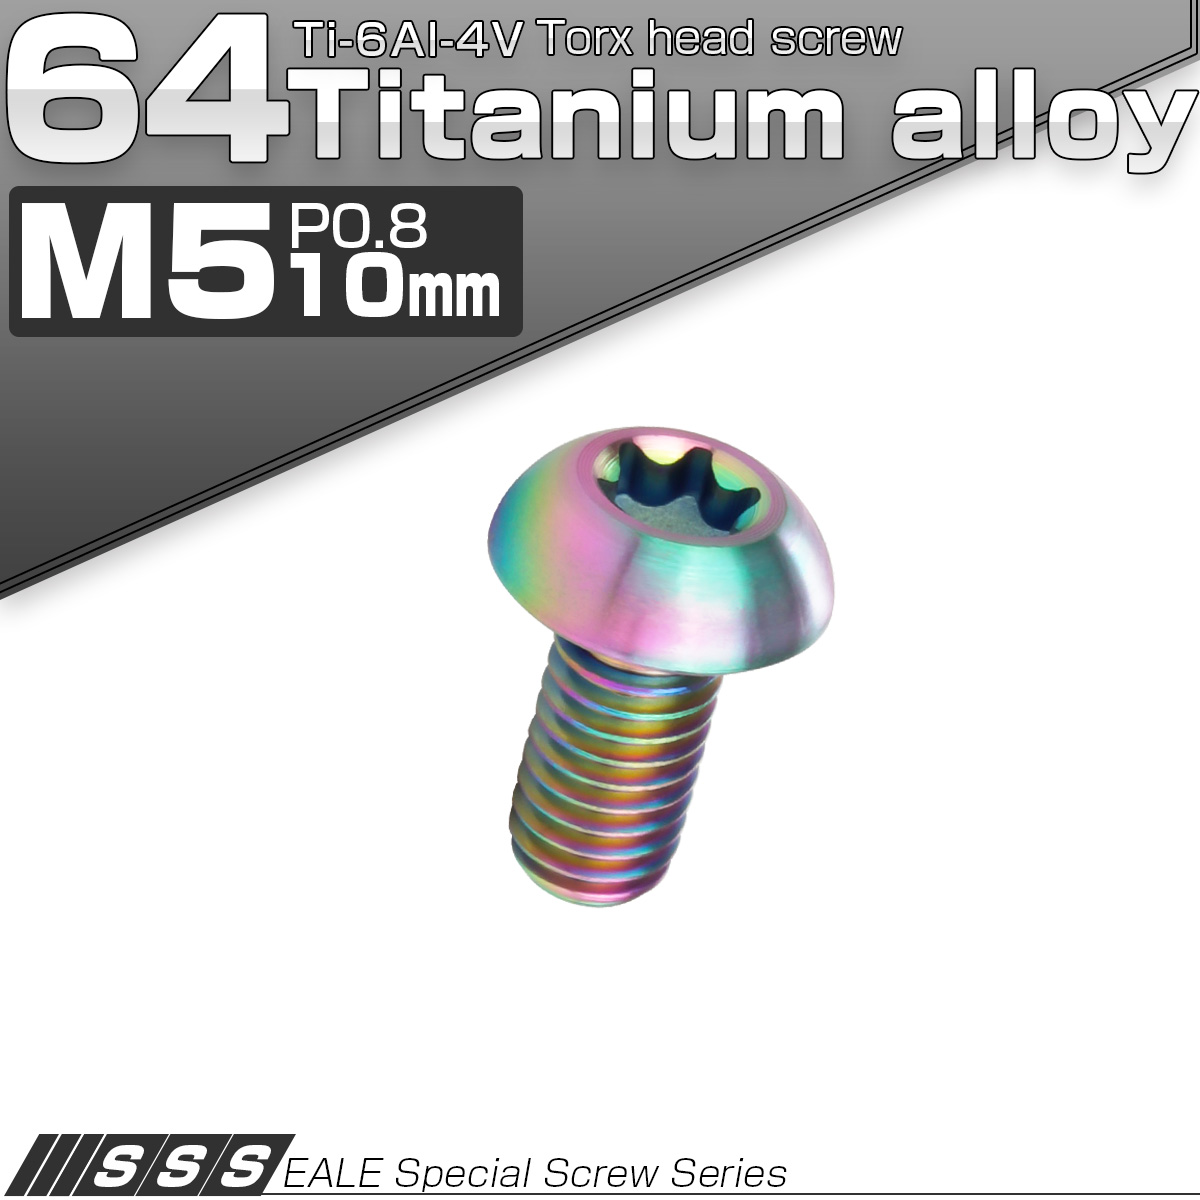 チタンボルト M5 10mm P0.8 ボタンボルト トルクス穴付き 虹色 レインボー JA460